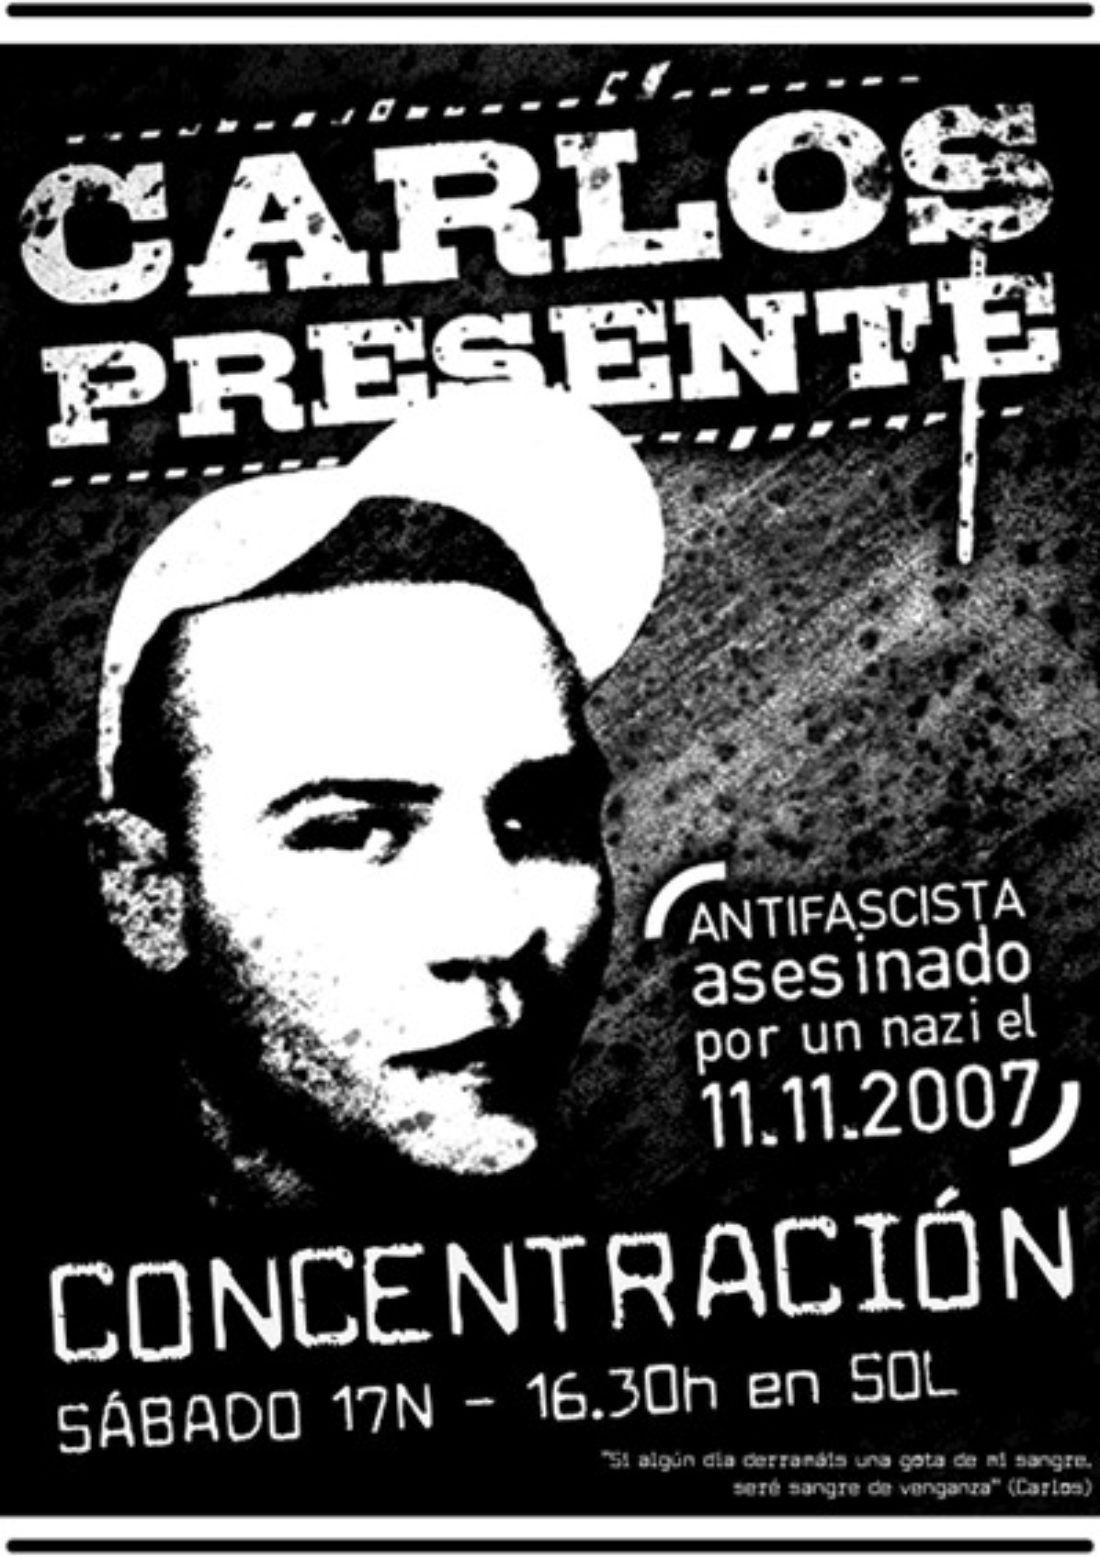 Madrid : Concentración antifascista, este sábado a las 16.30h en Sol : Carlos presente